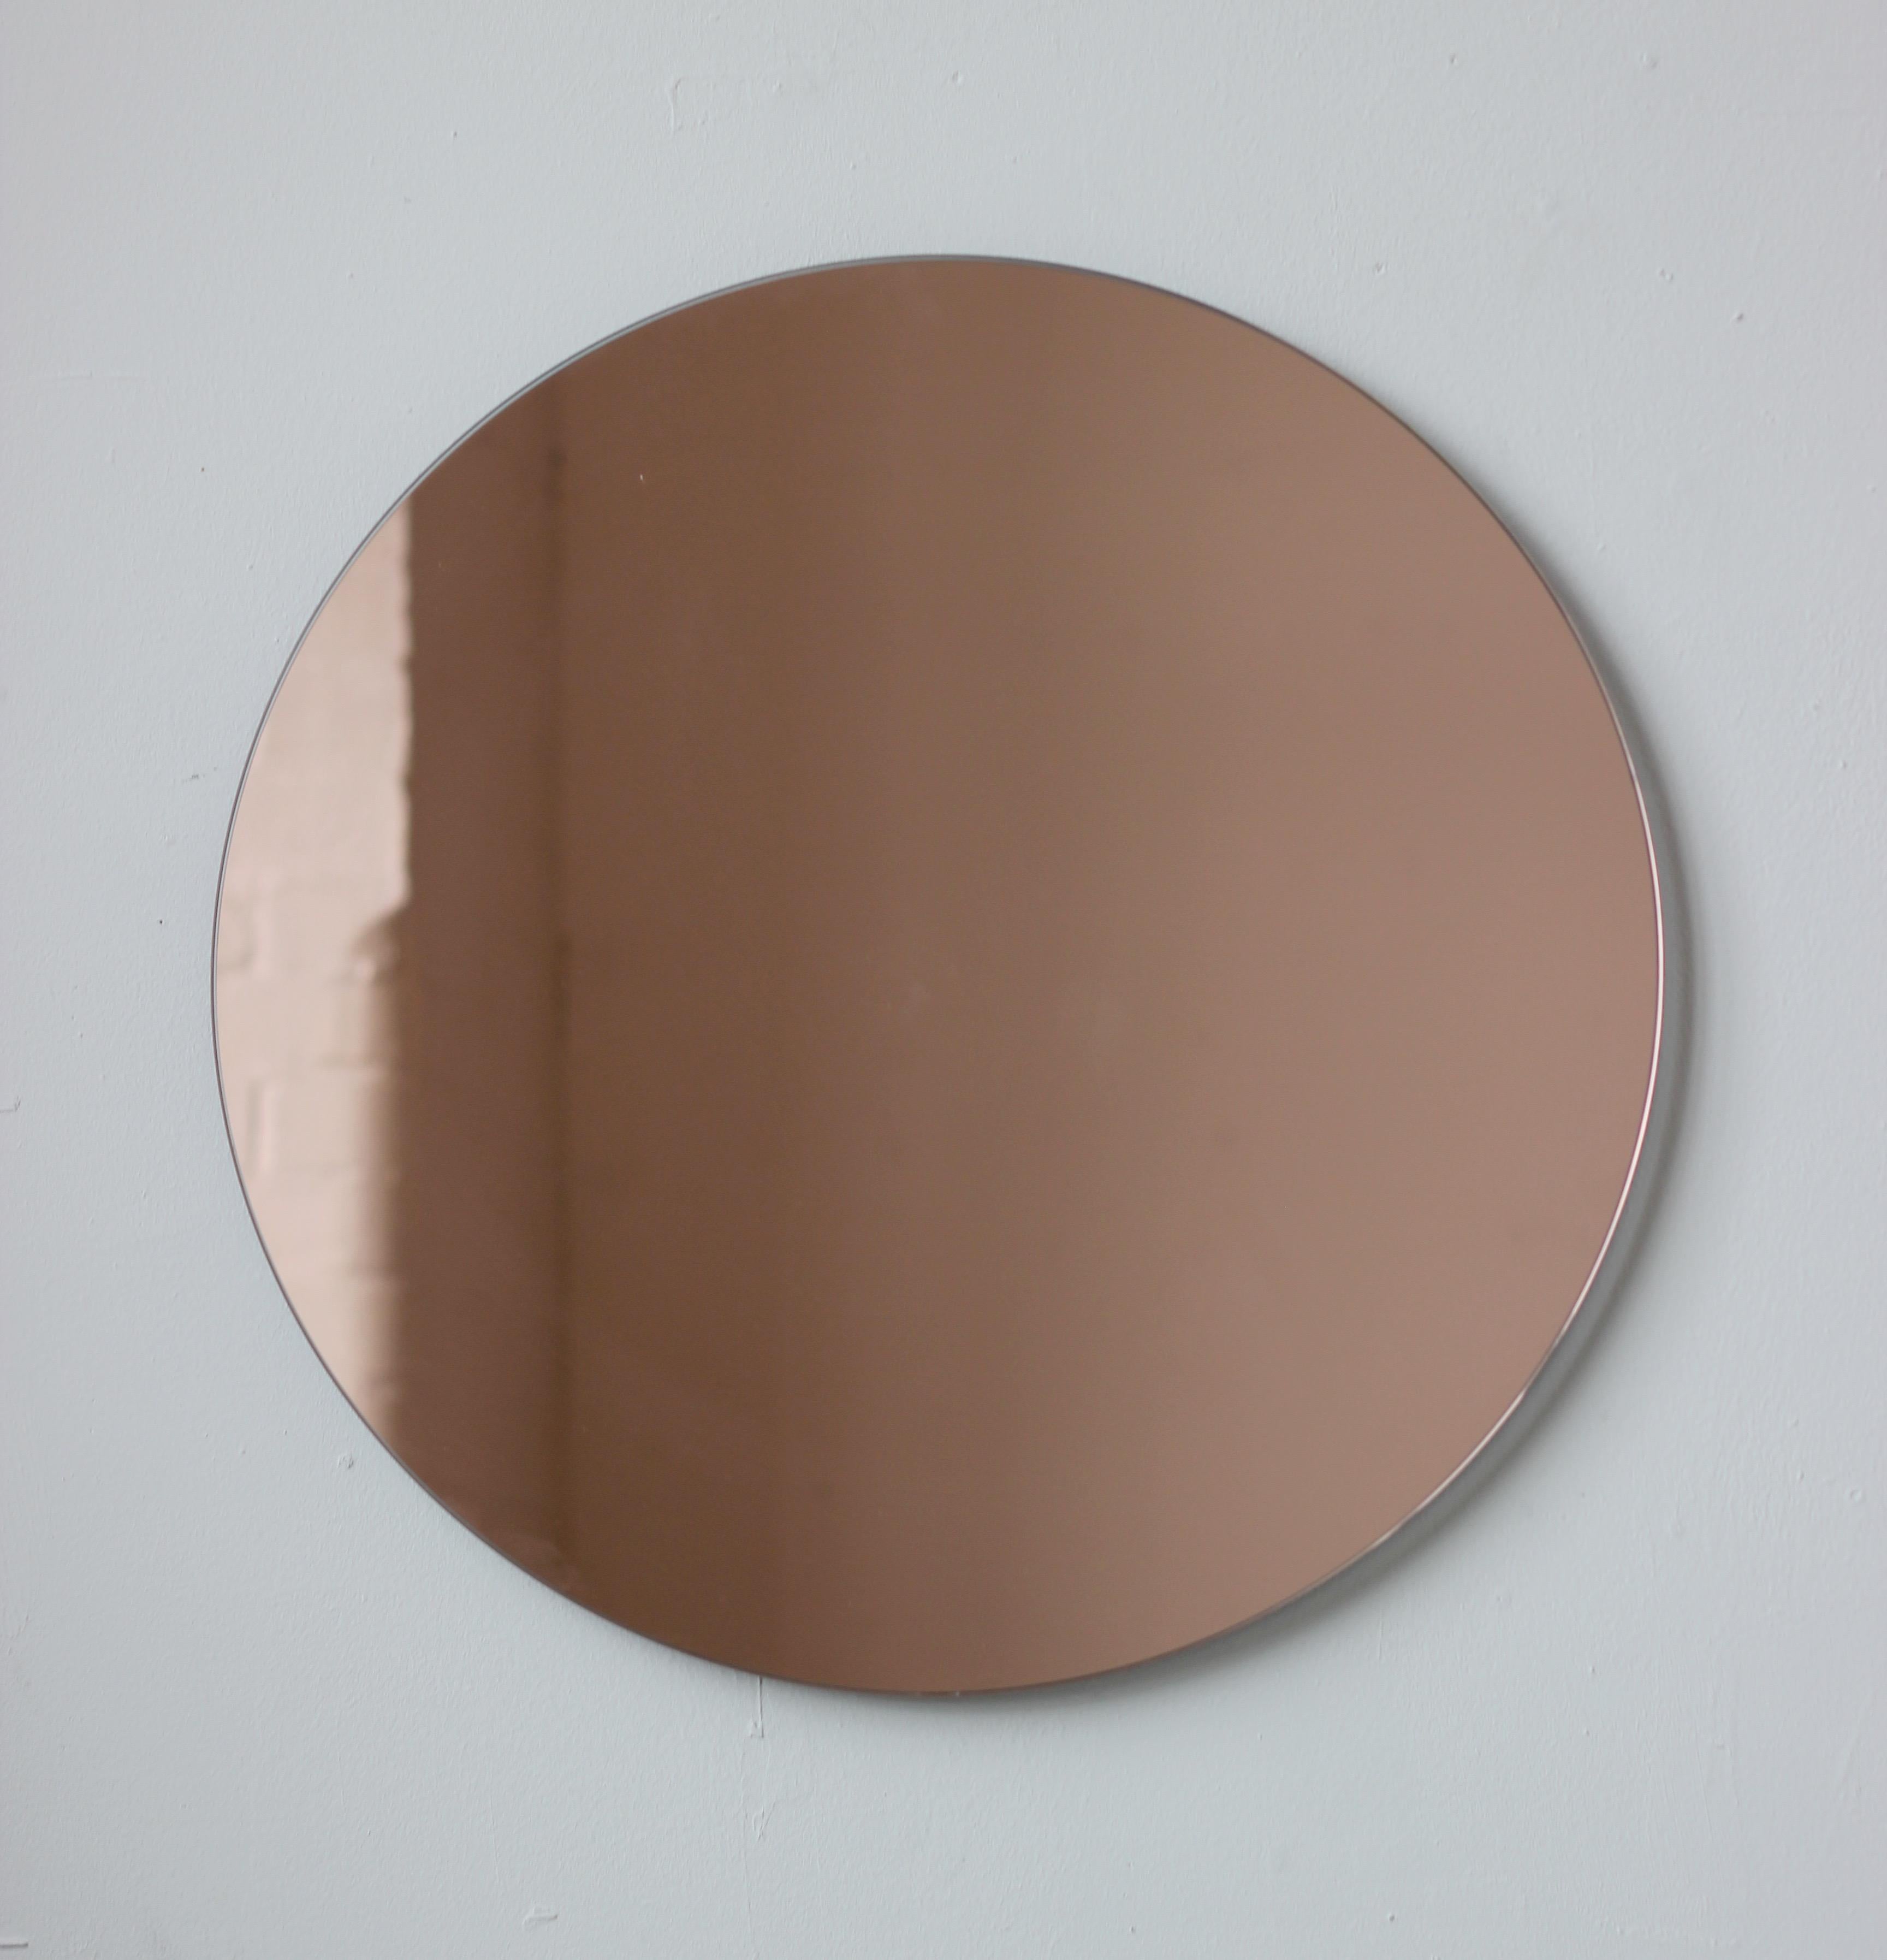 Charmant et minimaliste miroir rond sans cadre Orbis™ teinté or rose / pêche avec un effet flottant. Un design de qualité qui garantit que le miroir est parfaitement parallèle au mur. Conçu et fabriqué à Londres, au Royaume-Uni.

Equipé de plaques